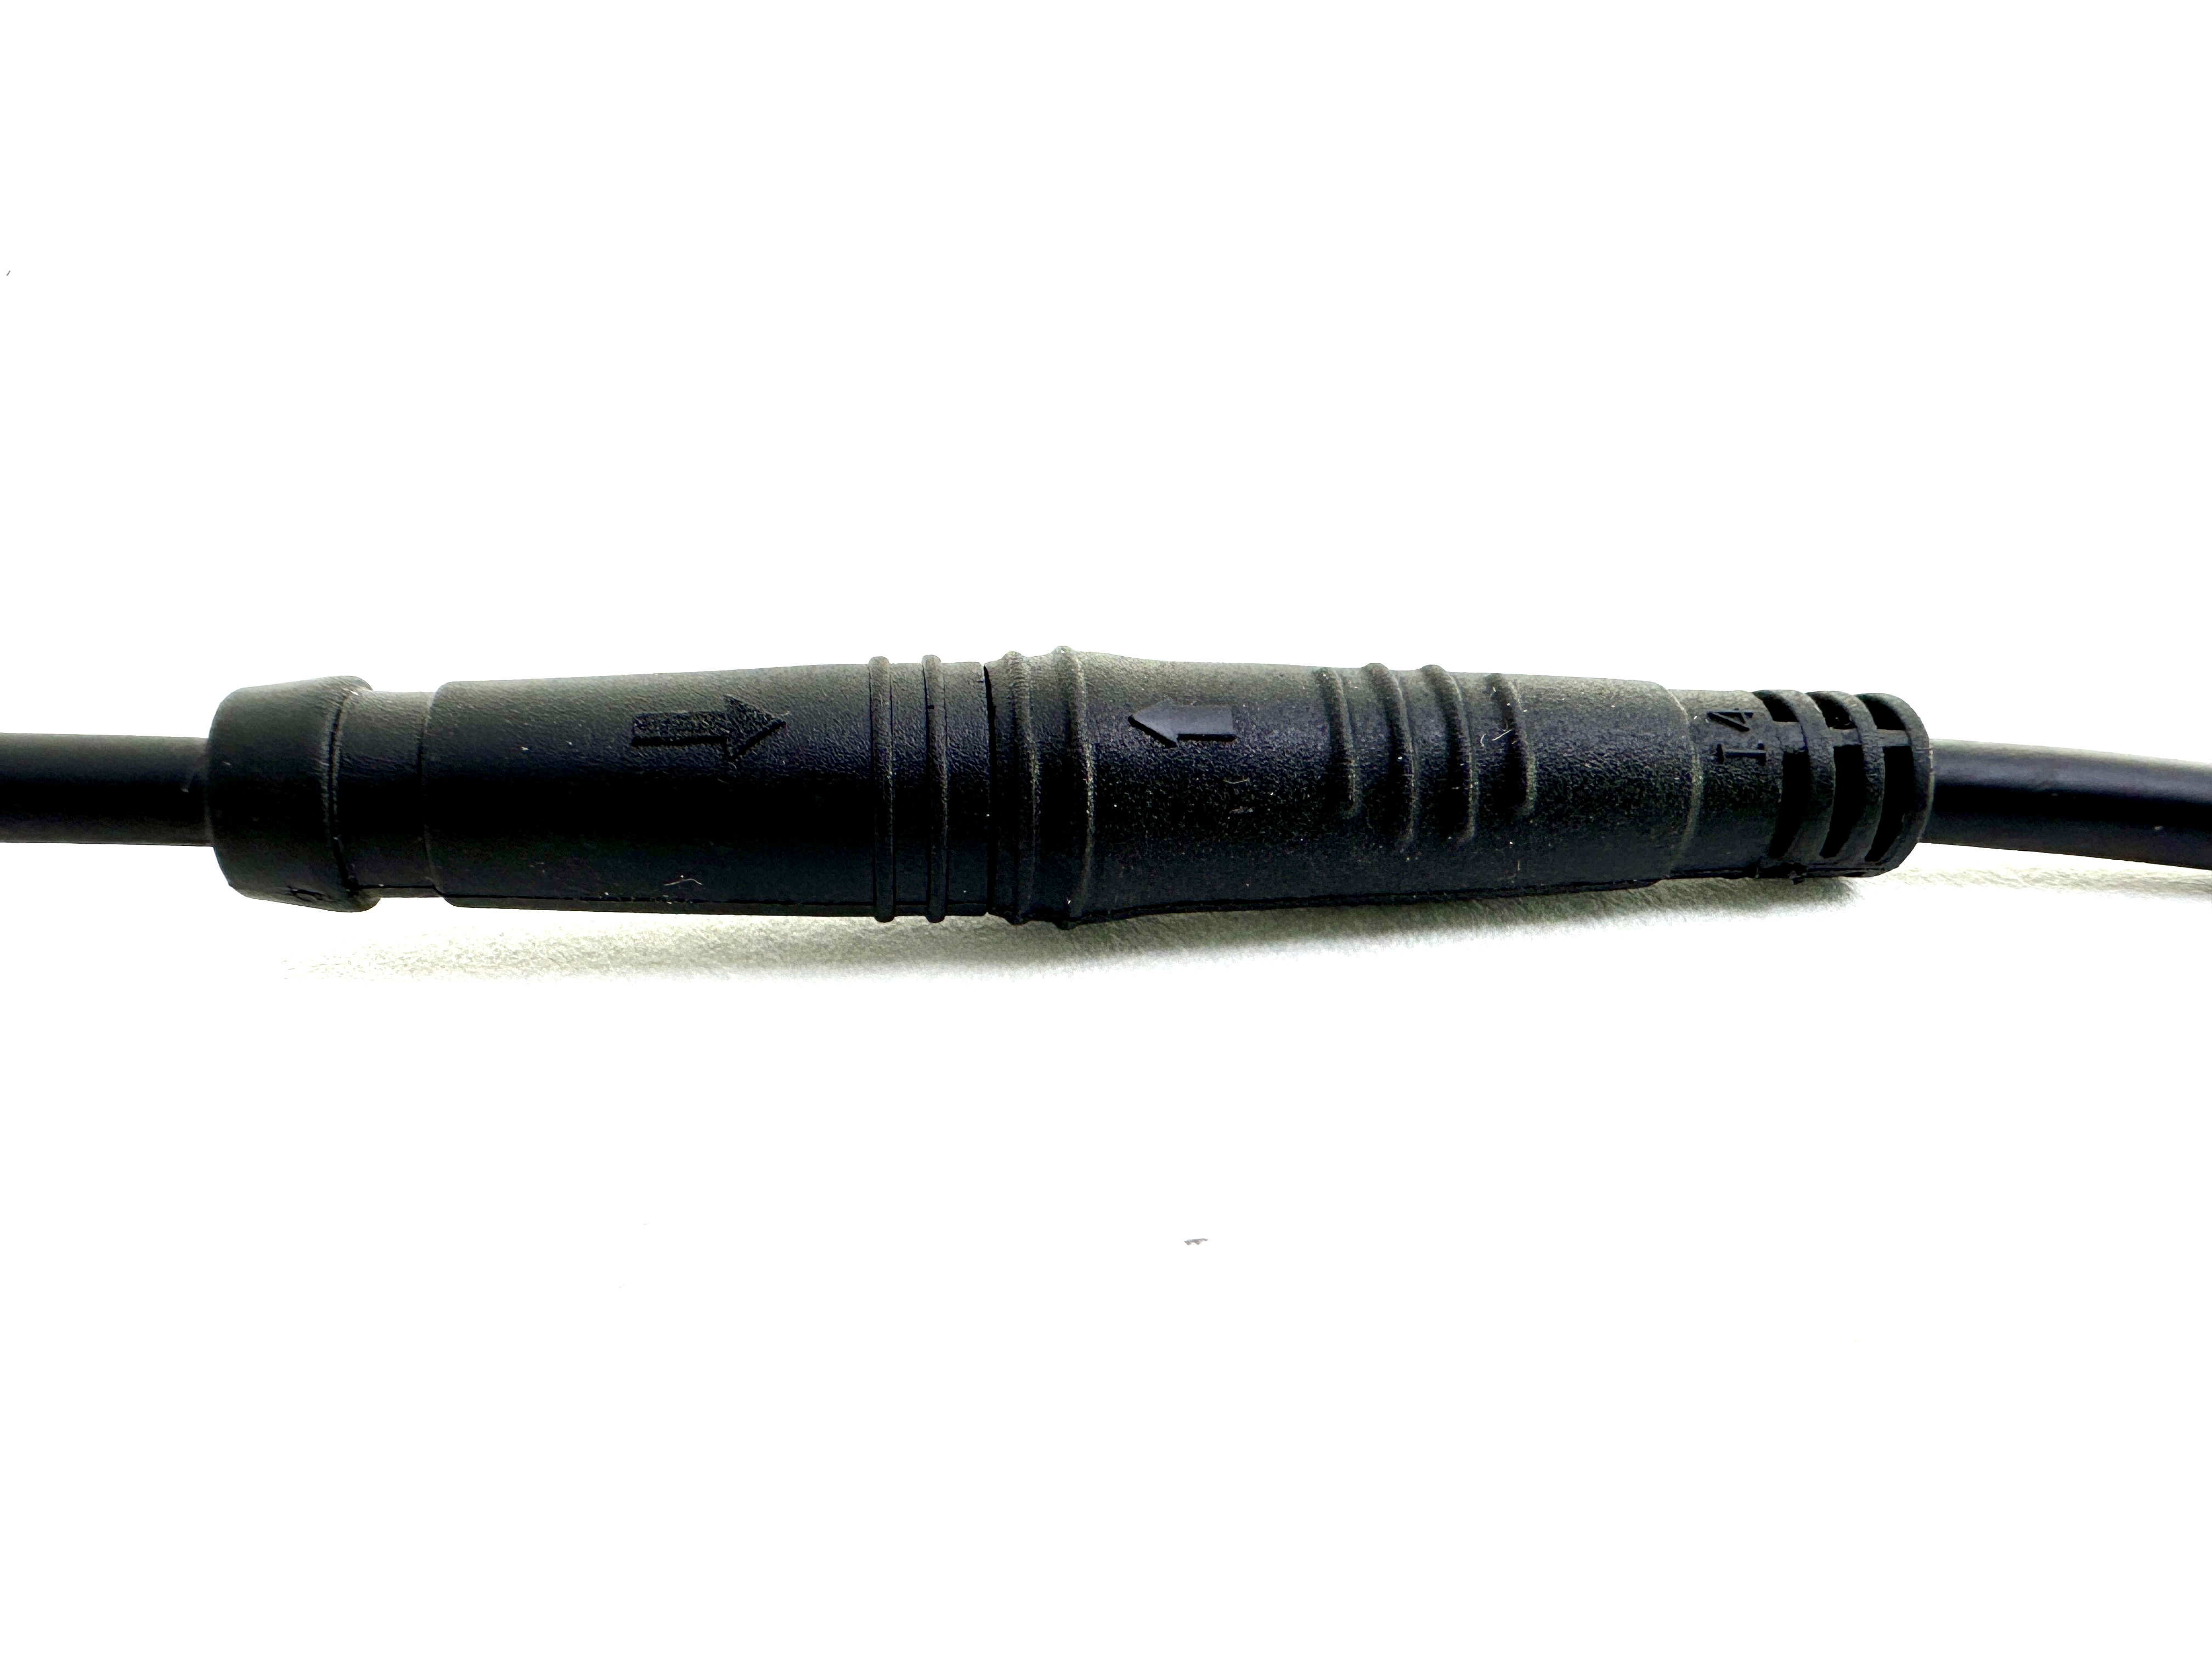 HIGO / Julet Câble adaptateur 10,5 cm pour Ebike, 2 PIN femelle à femelle, rouge